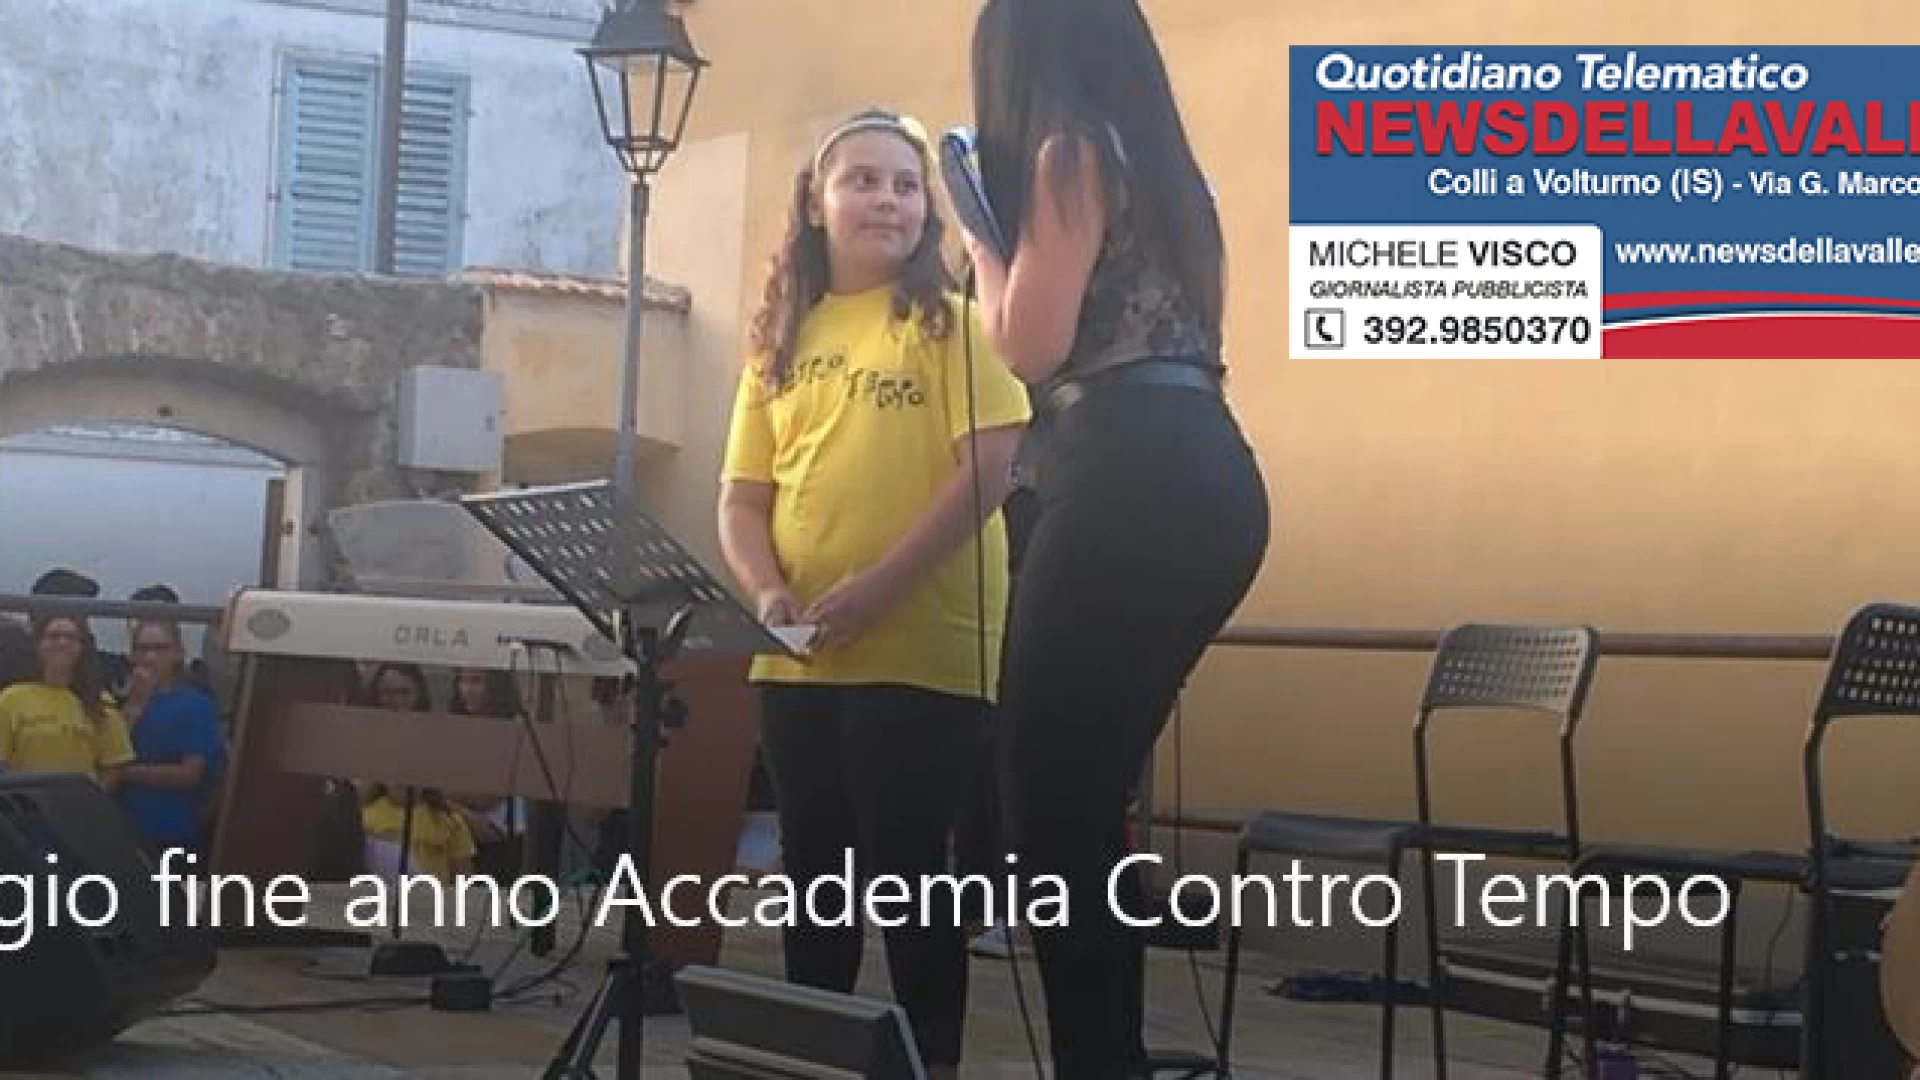 Colli a Volturno: il saggio di fine anno dell’Accademia Musicale “Contro Tempo” incanta. Guarda il nostro servizio video.